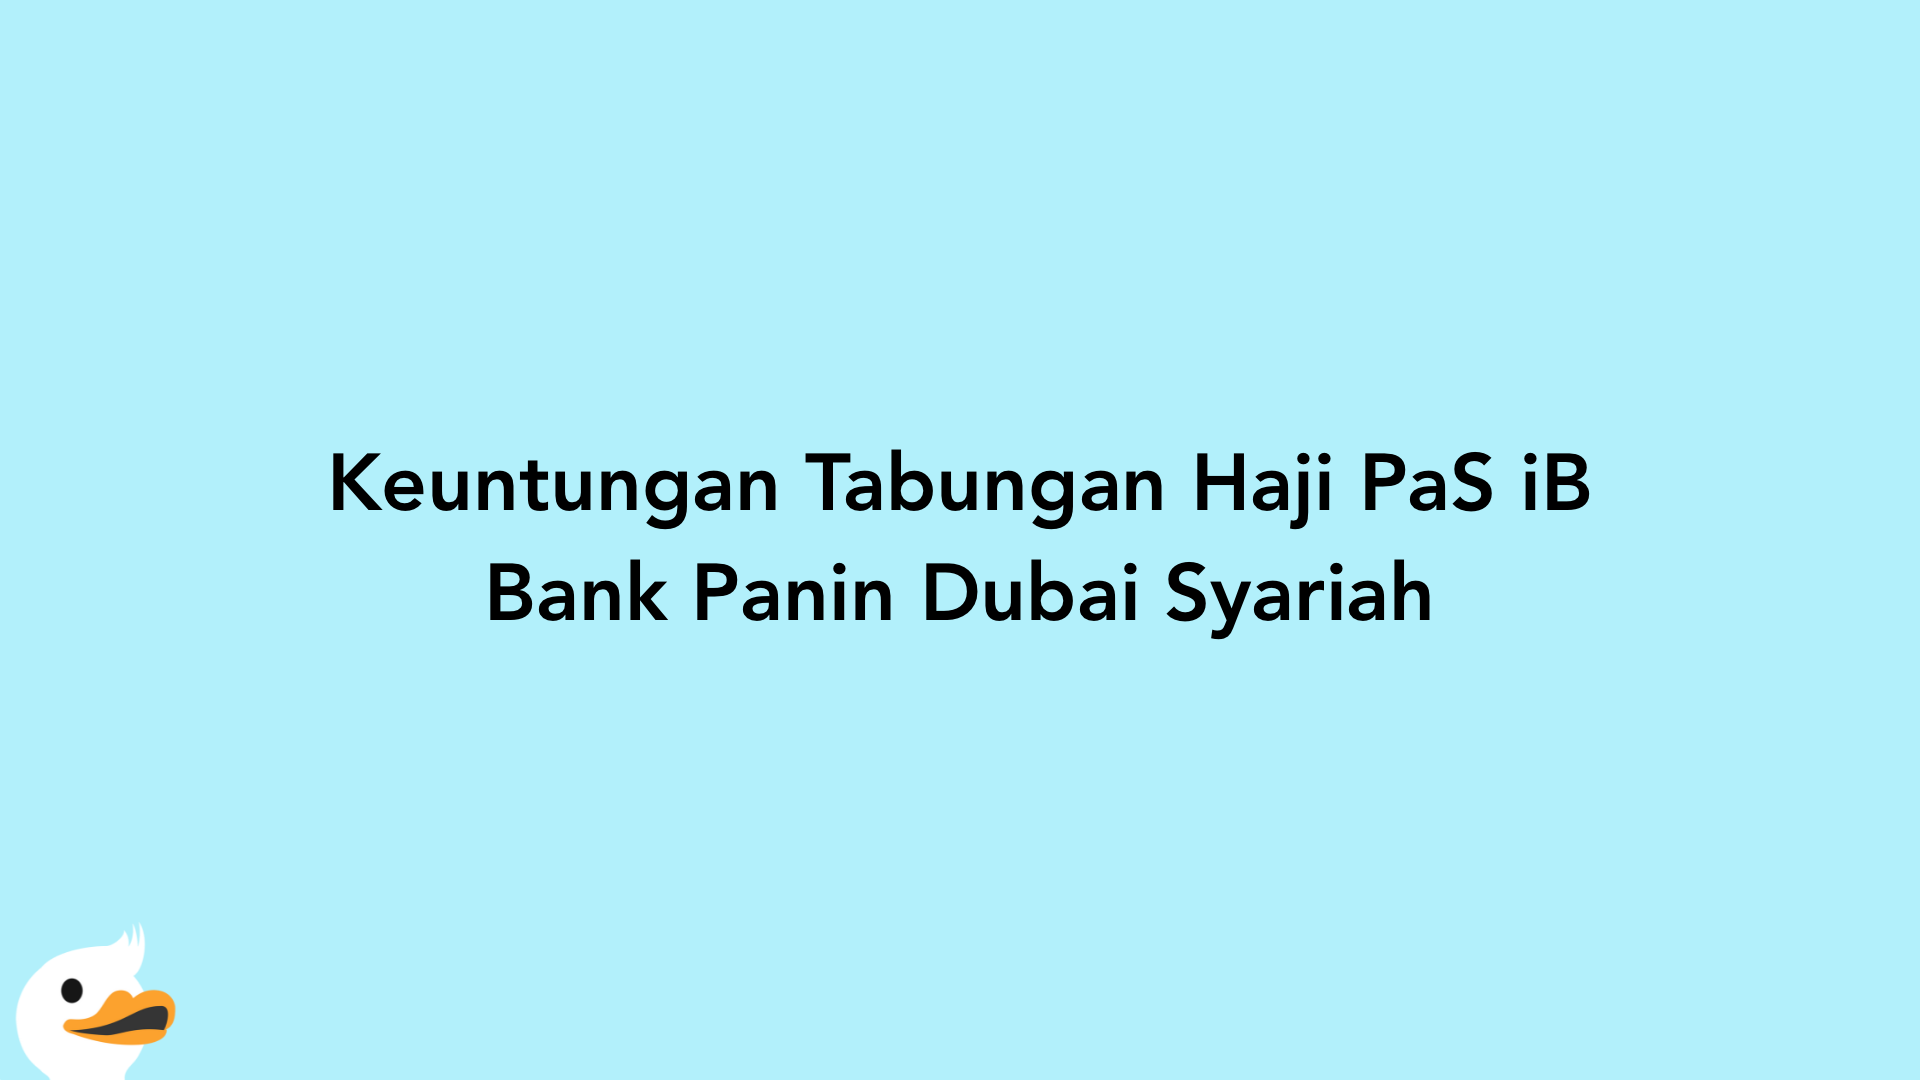 Keuntungan Tabungan Haji PaS iB Bank Panin Dubai Syariah